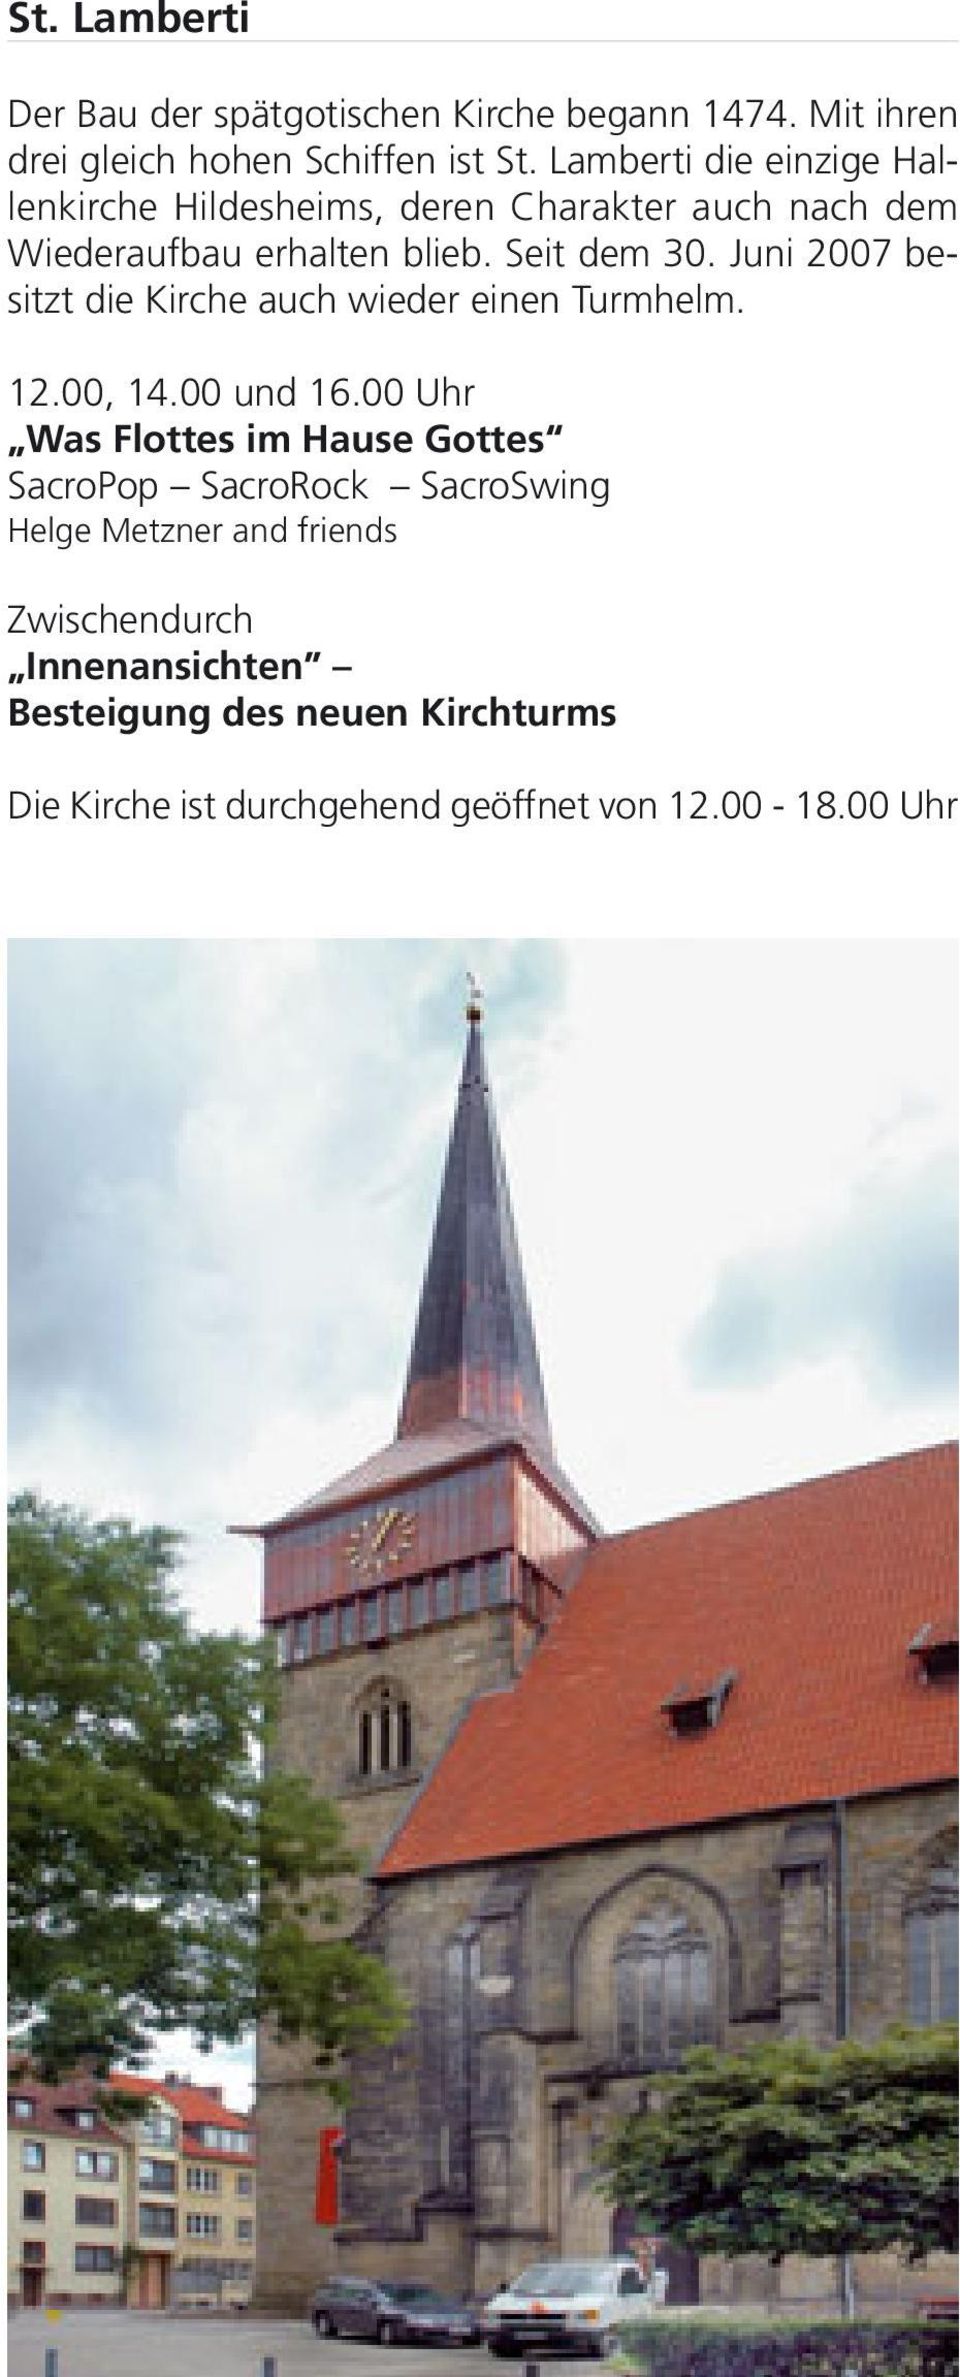 Juni 2007 besitzt die Kirche auch wieder einen Turmhelm. 12.00, 14.00 und 16.